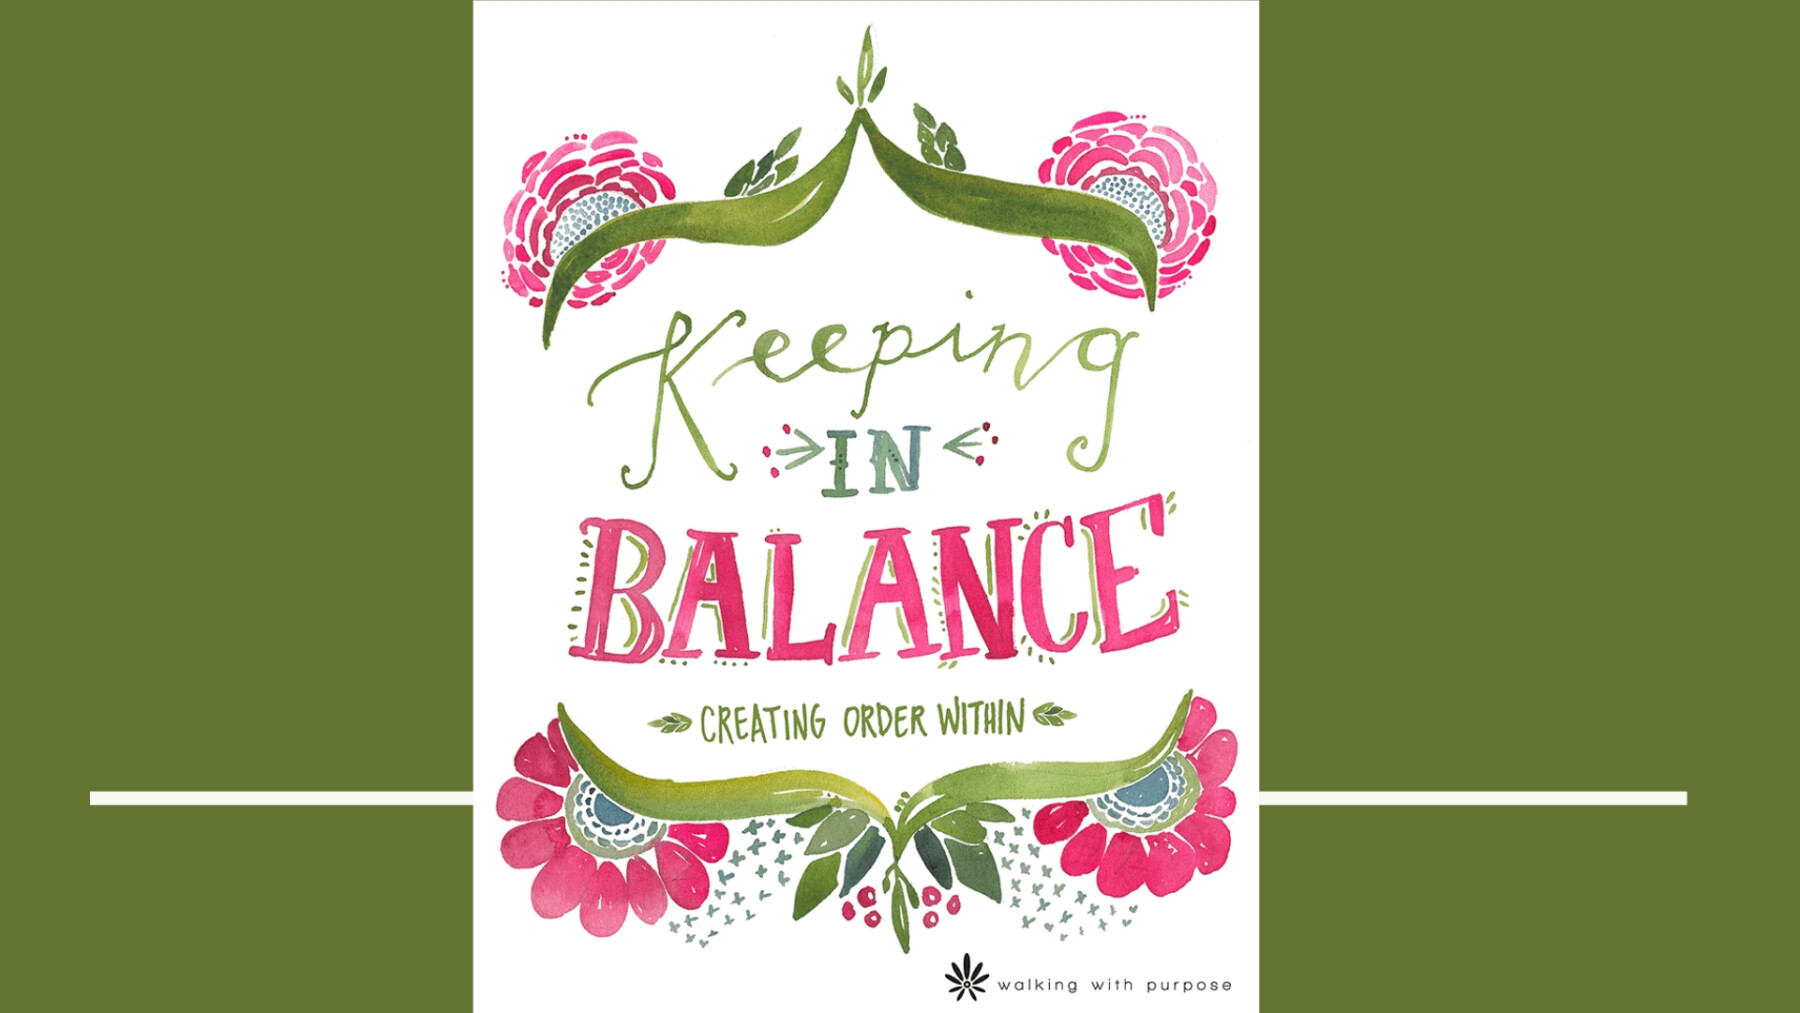 WWP - Keeping in Balance